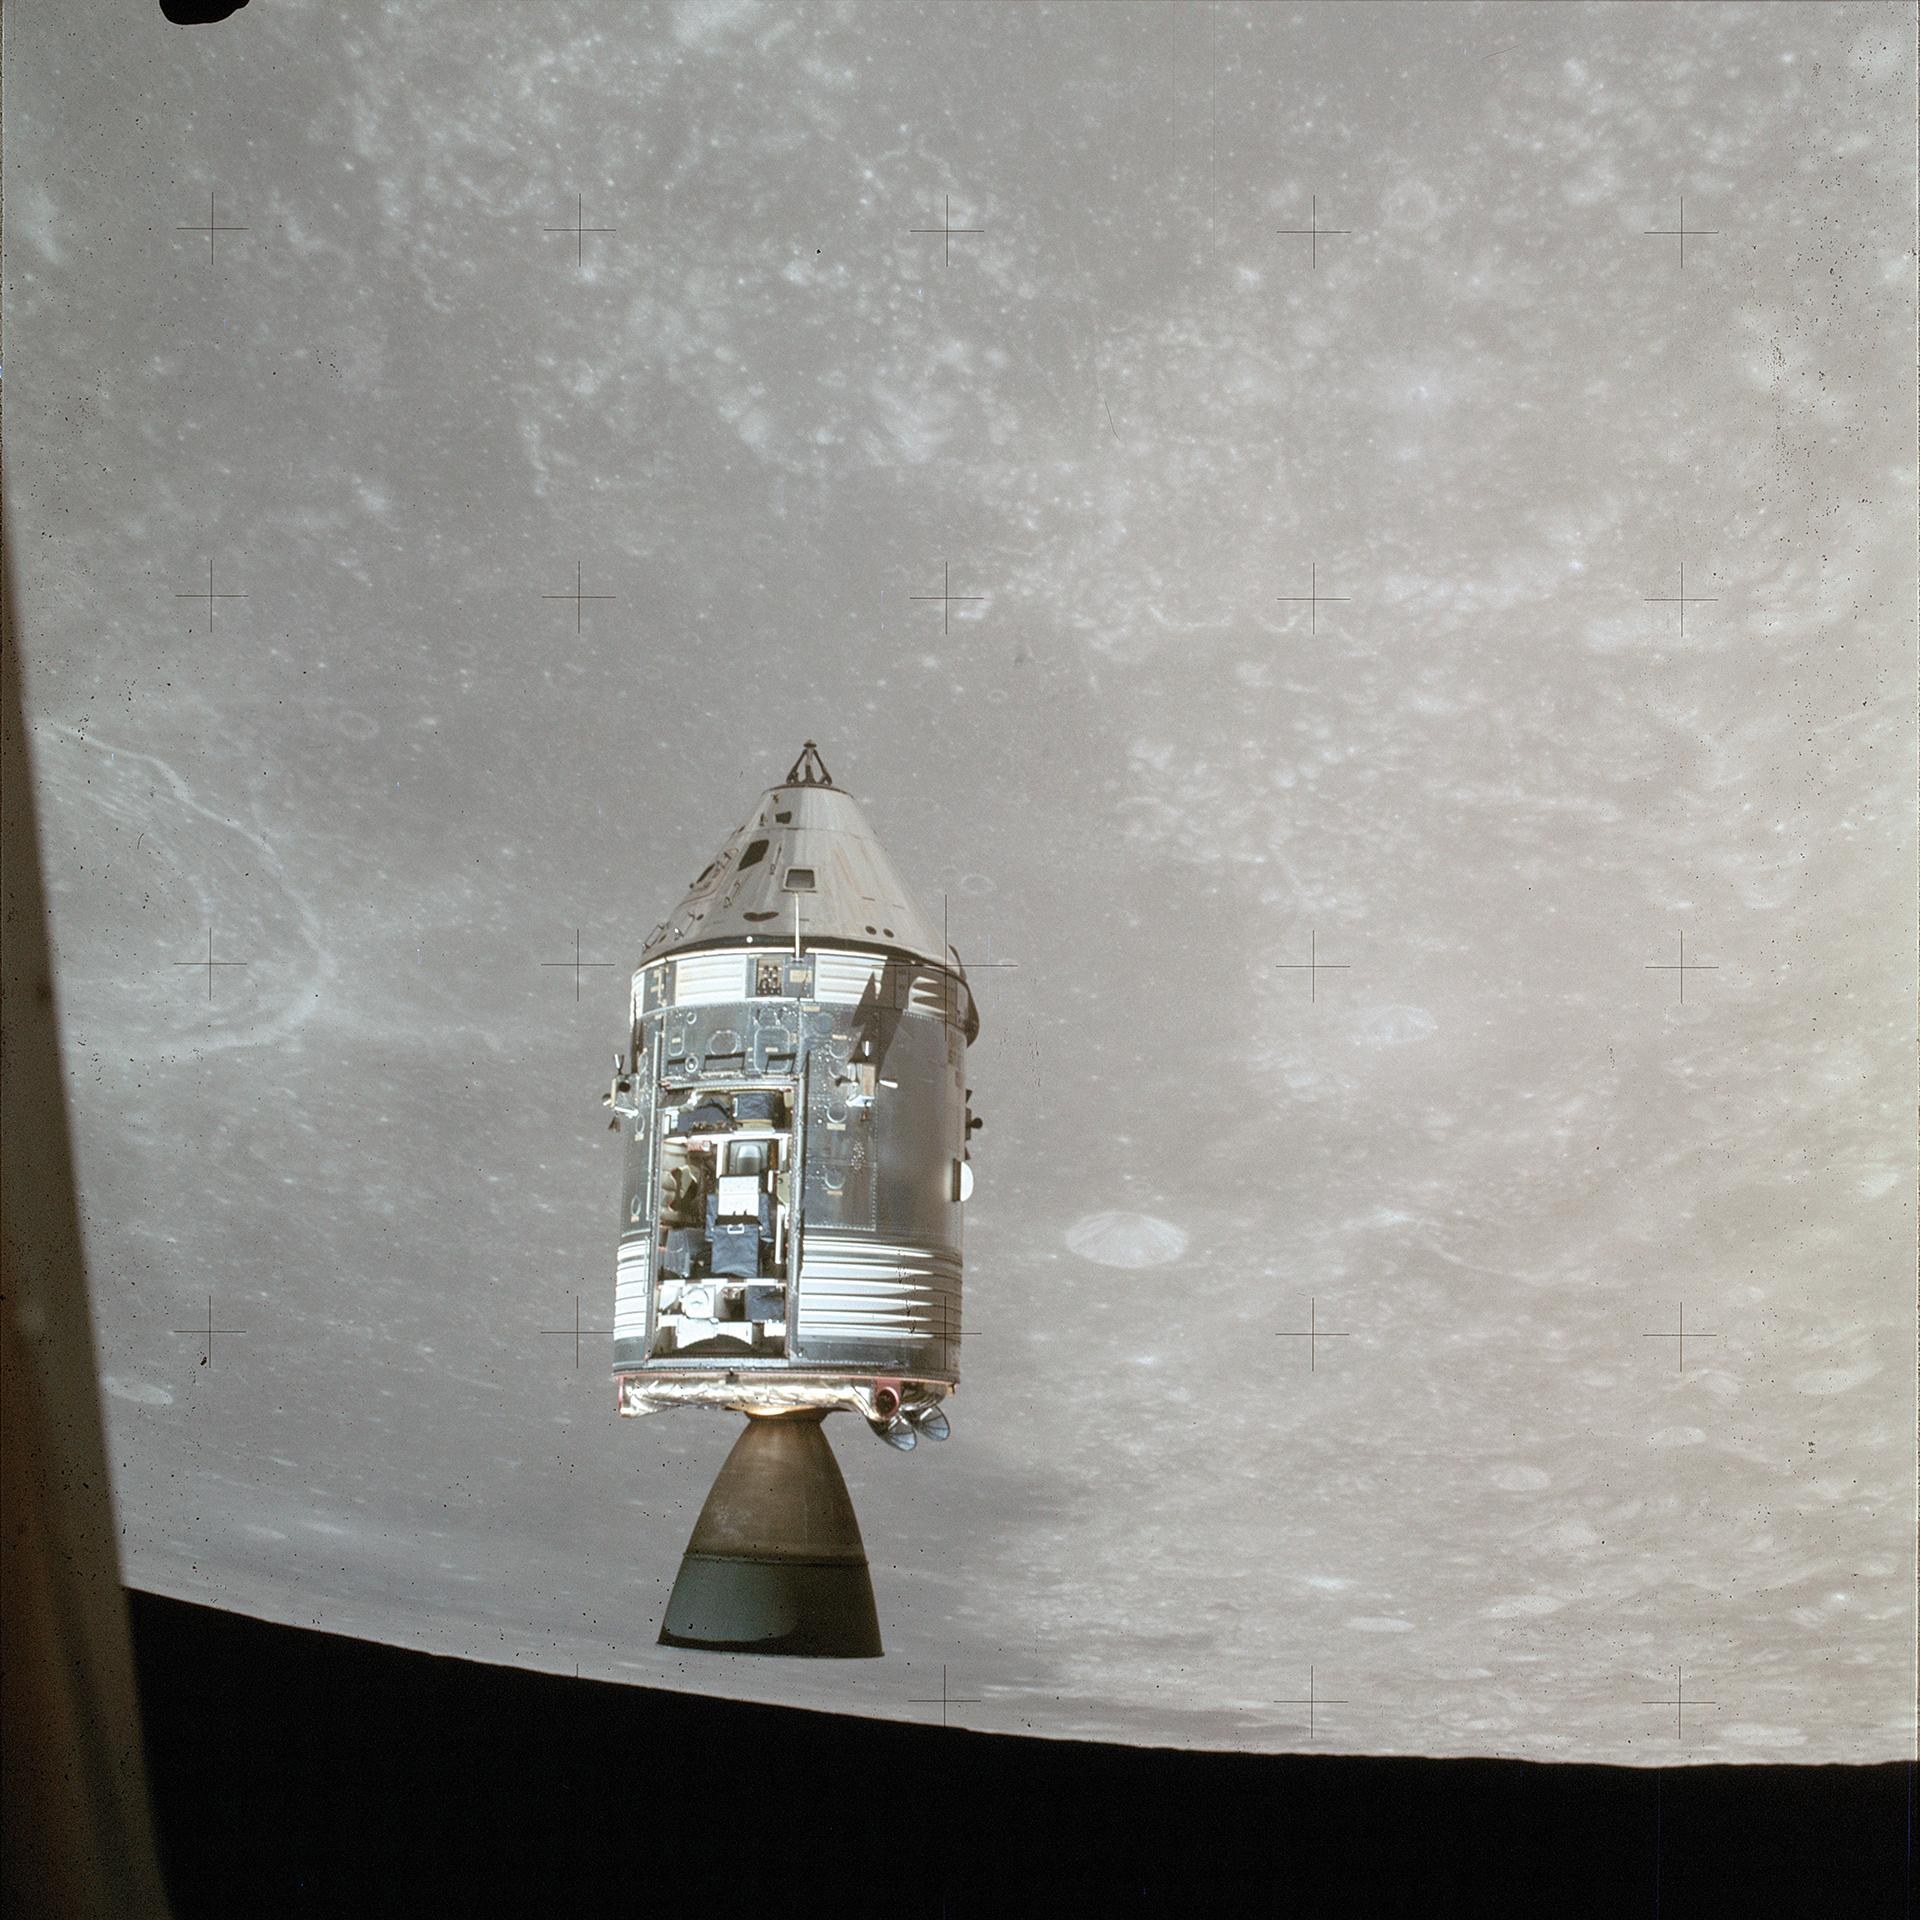 The Apollo 15 Command and Service Module in lunar orbit